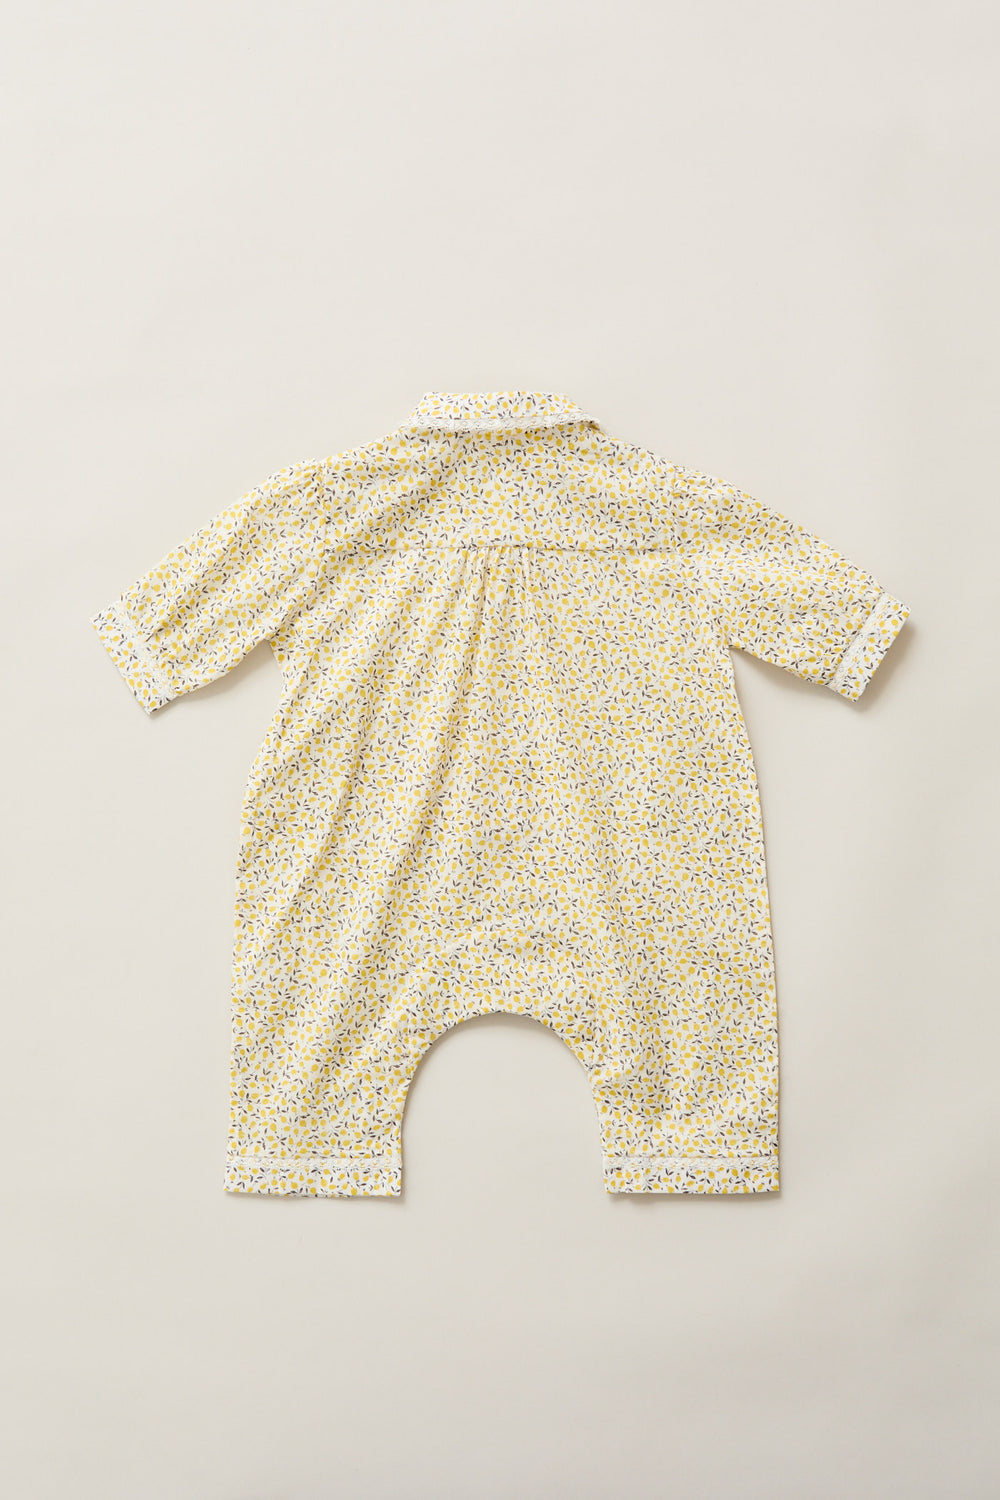 Baby Pyjama in Lemons Liberty Print